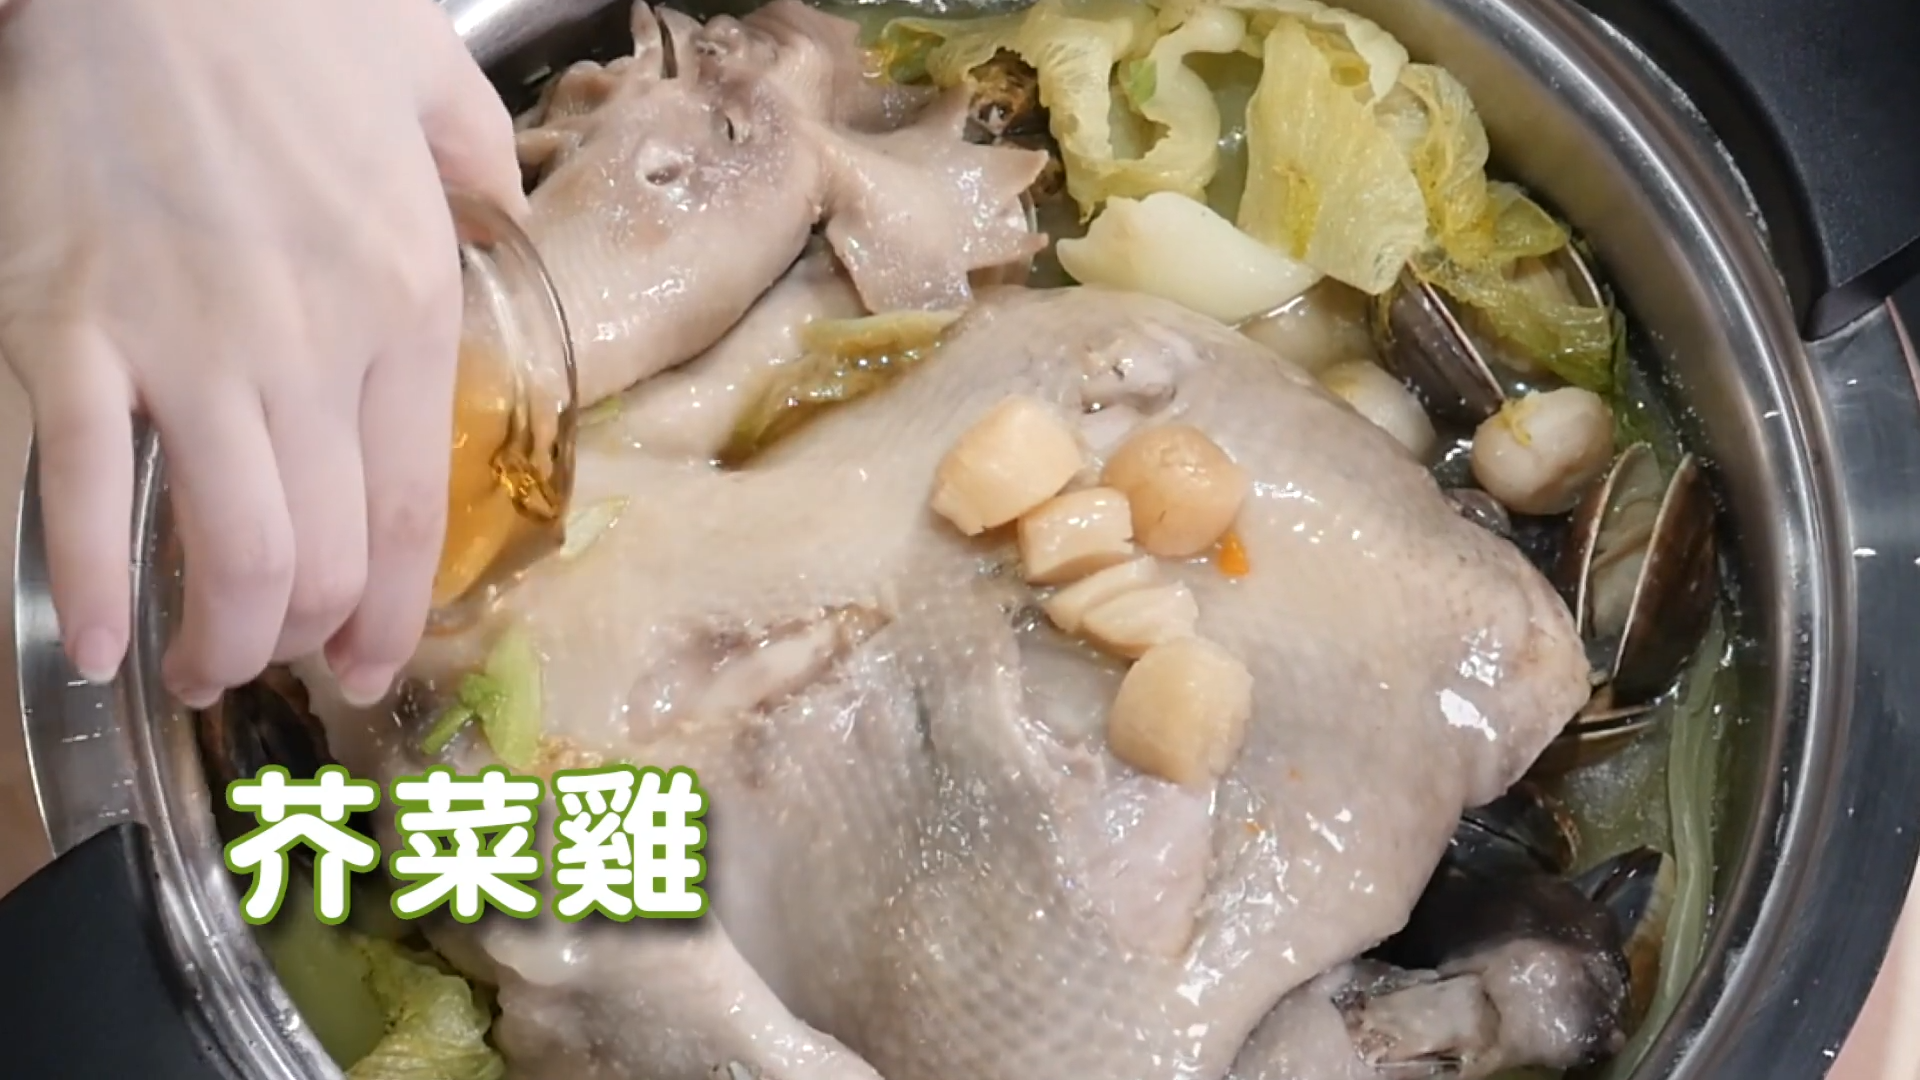 【微微蔡100煮義】一鍋多菜-芥菜雞/白菜滷/蒜泥白肉